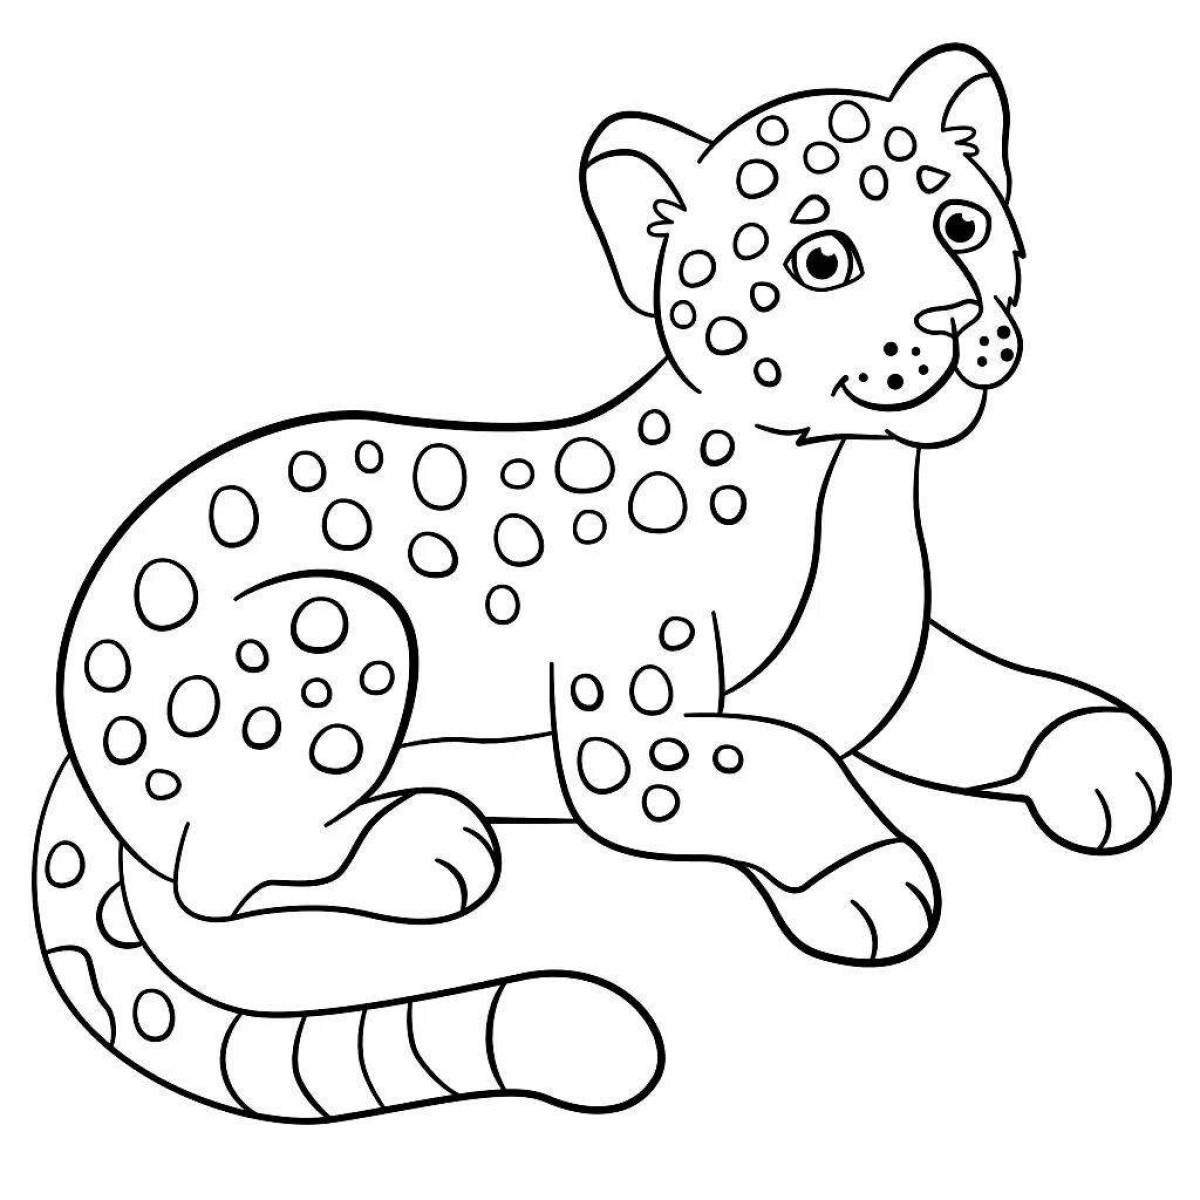 Coloring book impressive Amur leopard